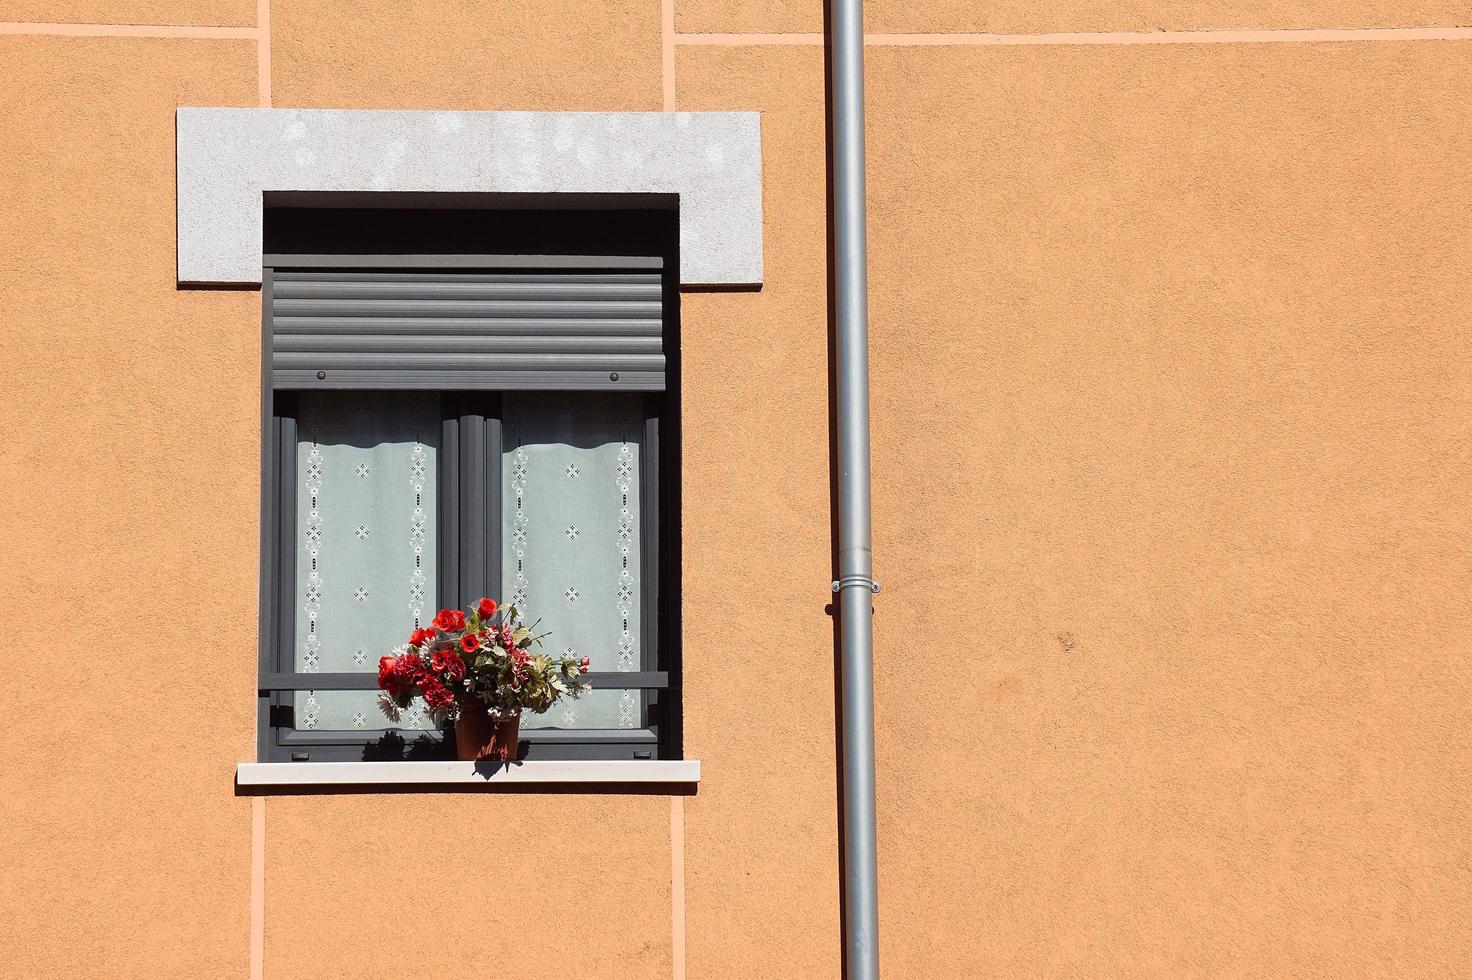 janela na fachada laranja da casa foto